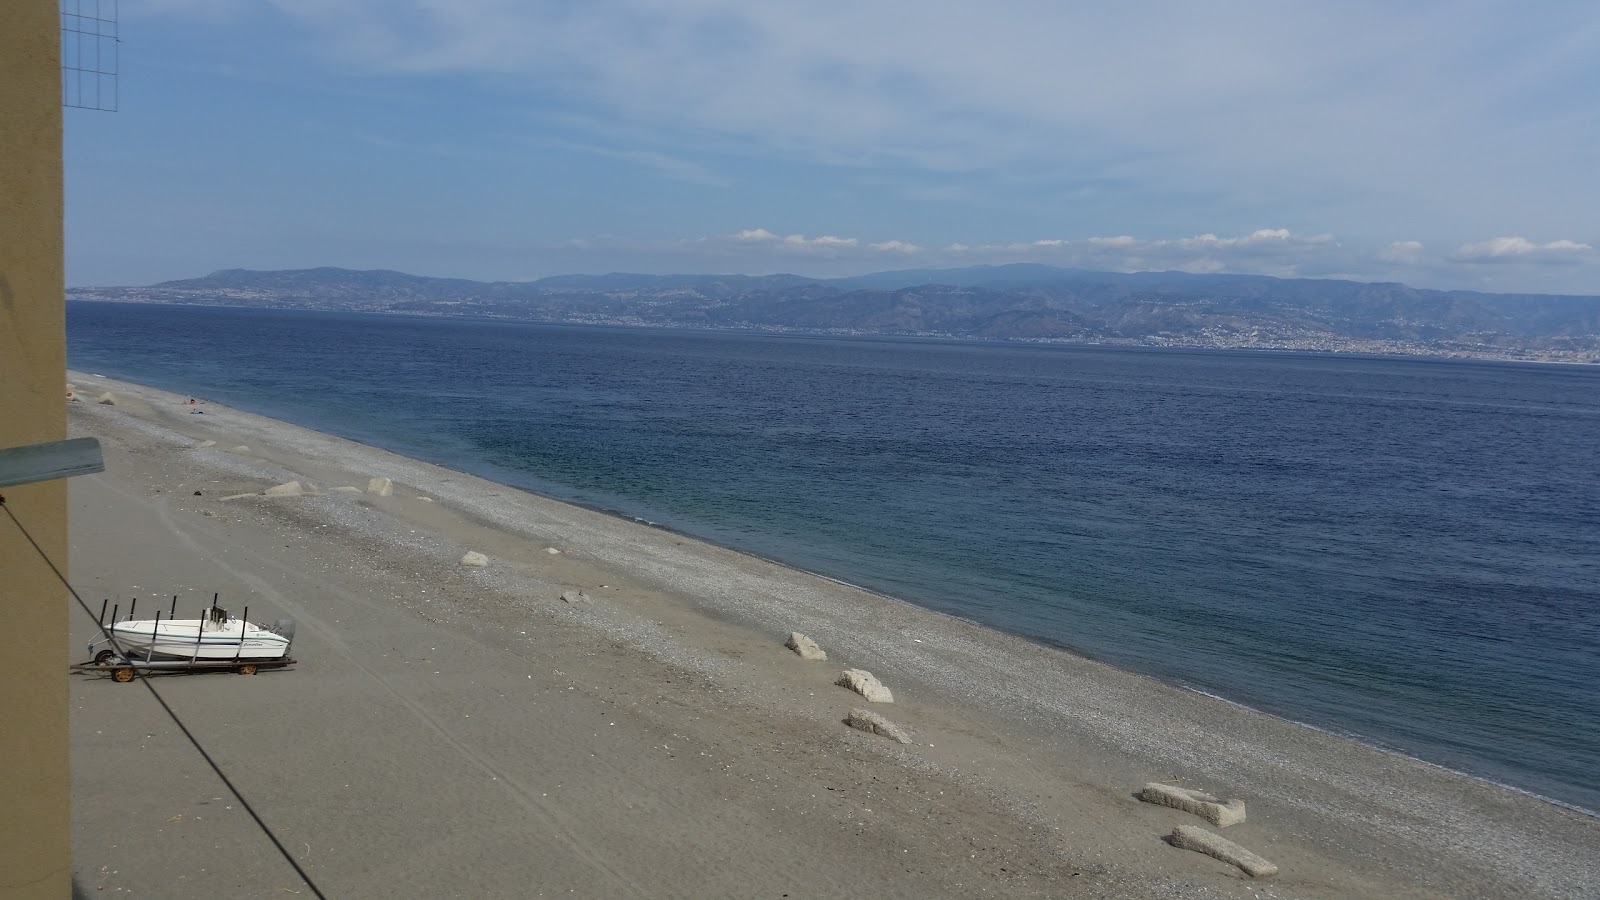 Mili Marina beach II'in fotoğrafı gri çakıl taşı yüzey ile